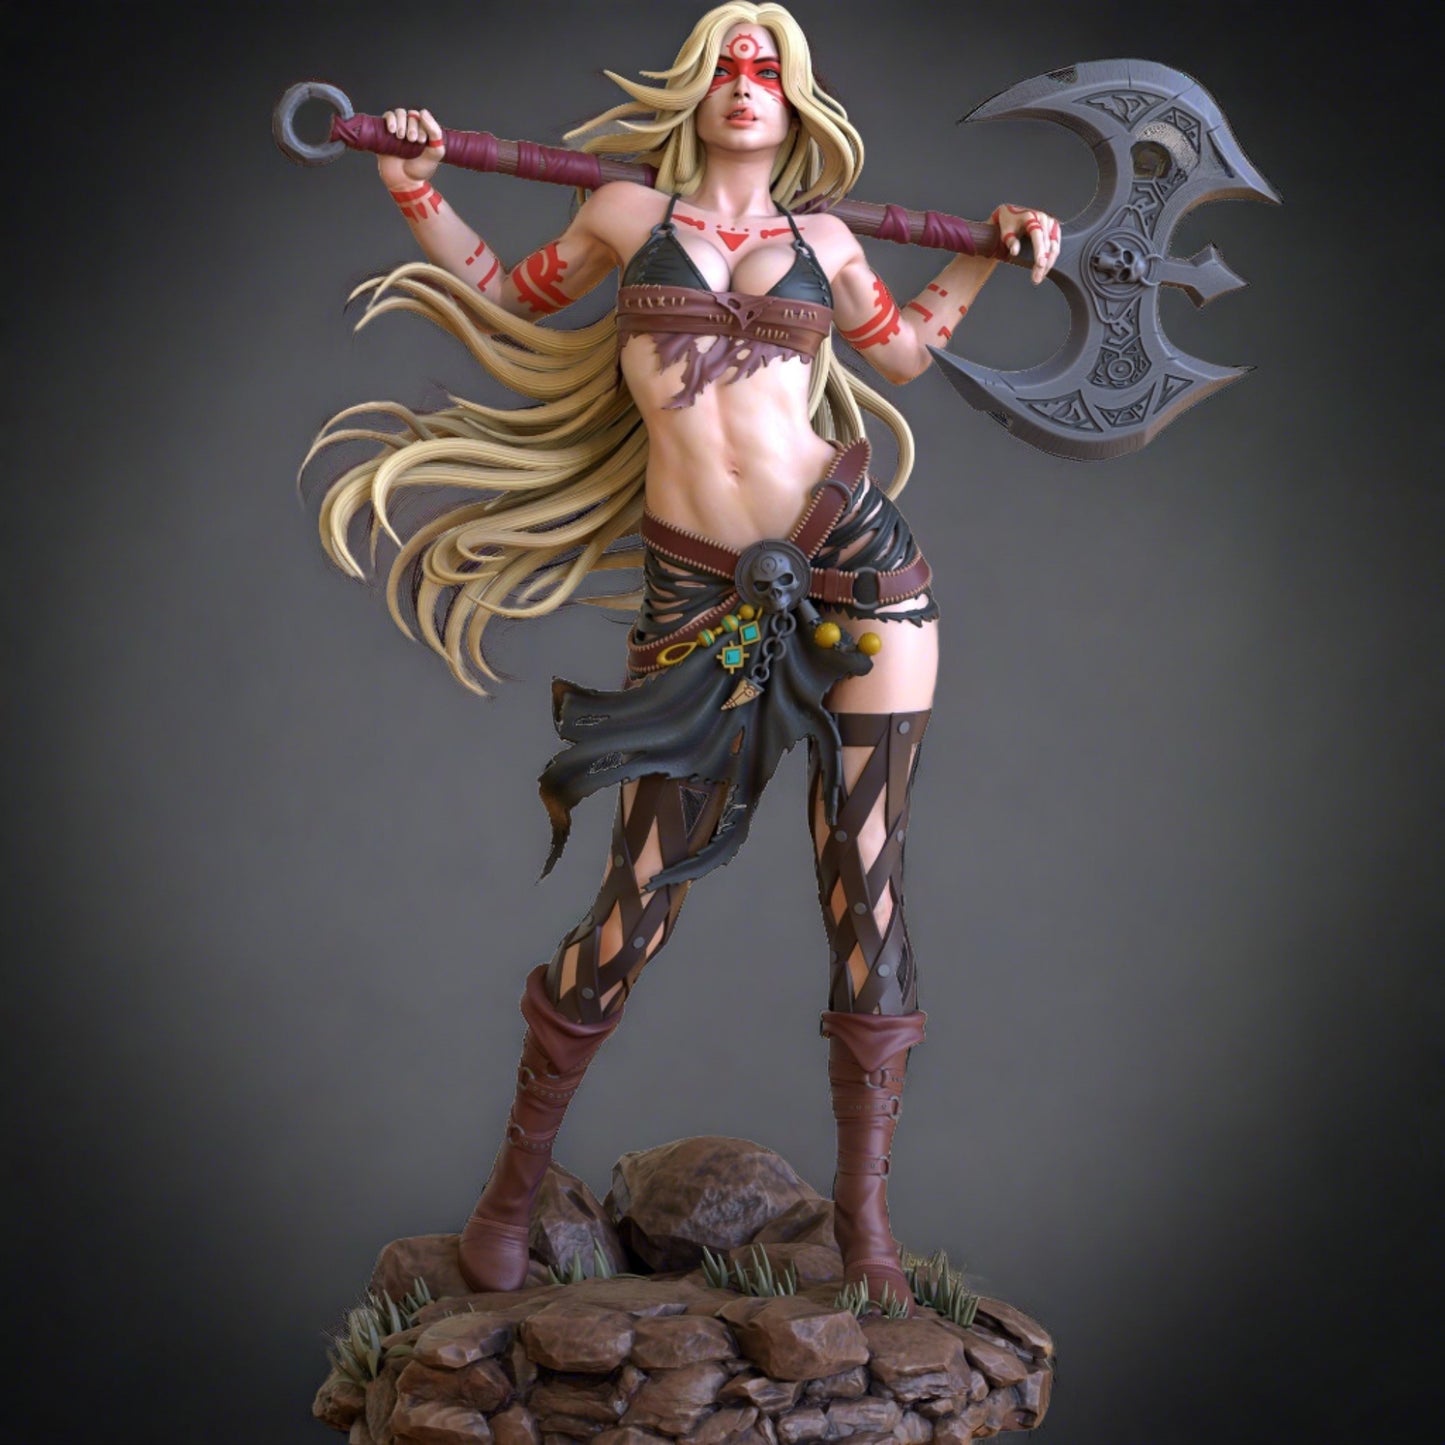 Diablo STL File 3D Printing Digital STL File Game Character Female Barbarian Figure 0148